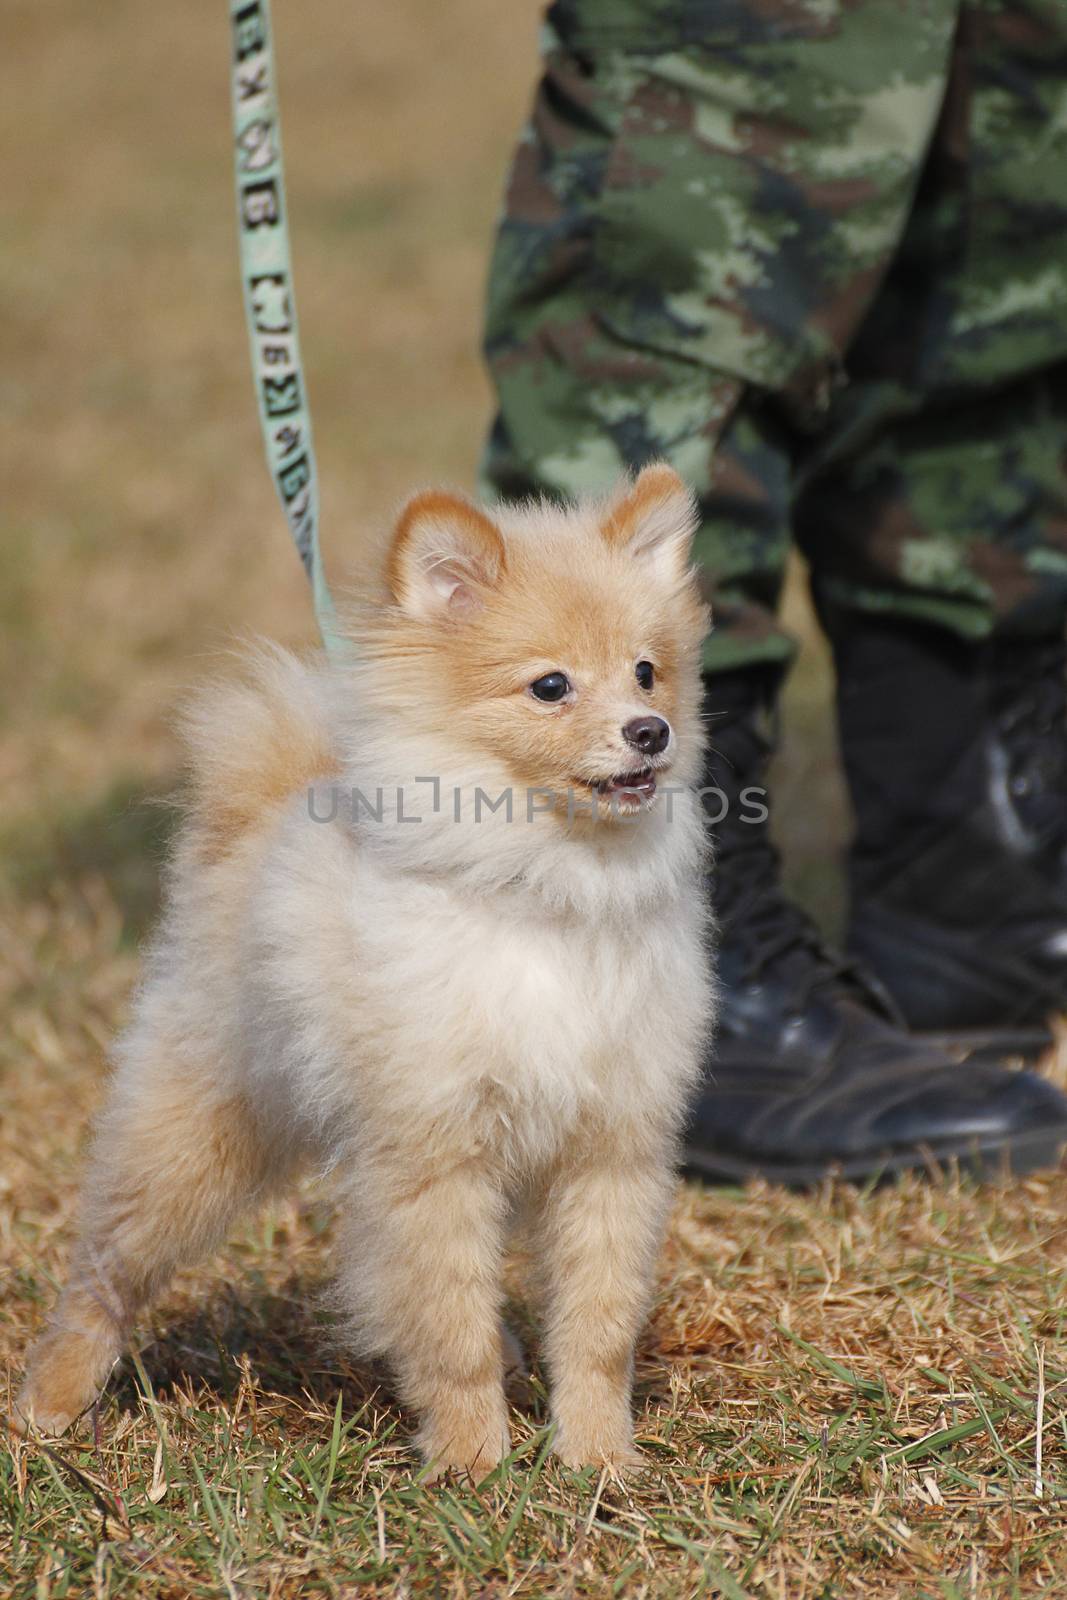 THAILAND- DECEMBER 18: Training Dogs of War, Thailand's Army on December 18, 2014 in Saraburi, Thailand.